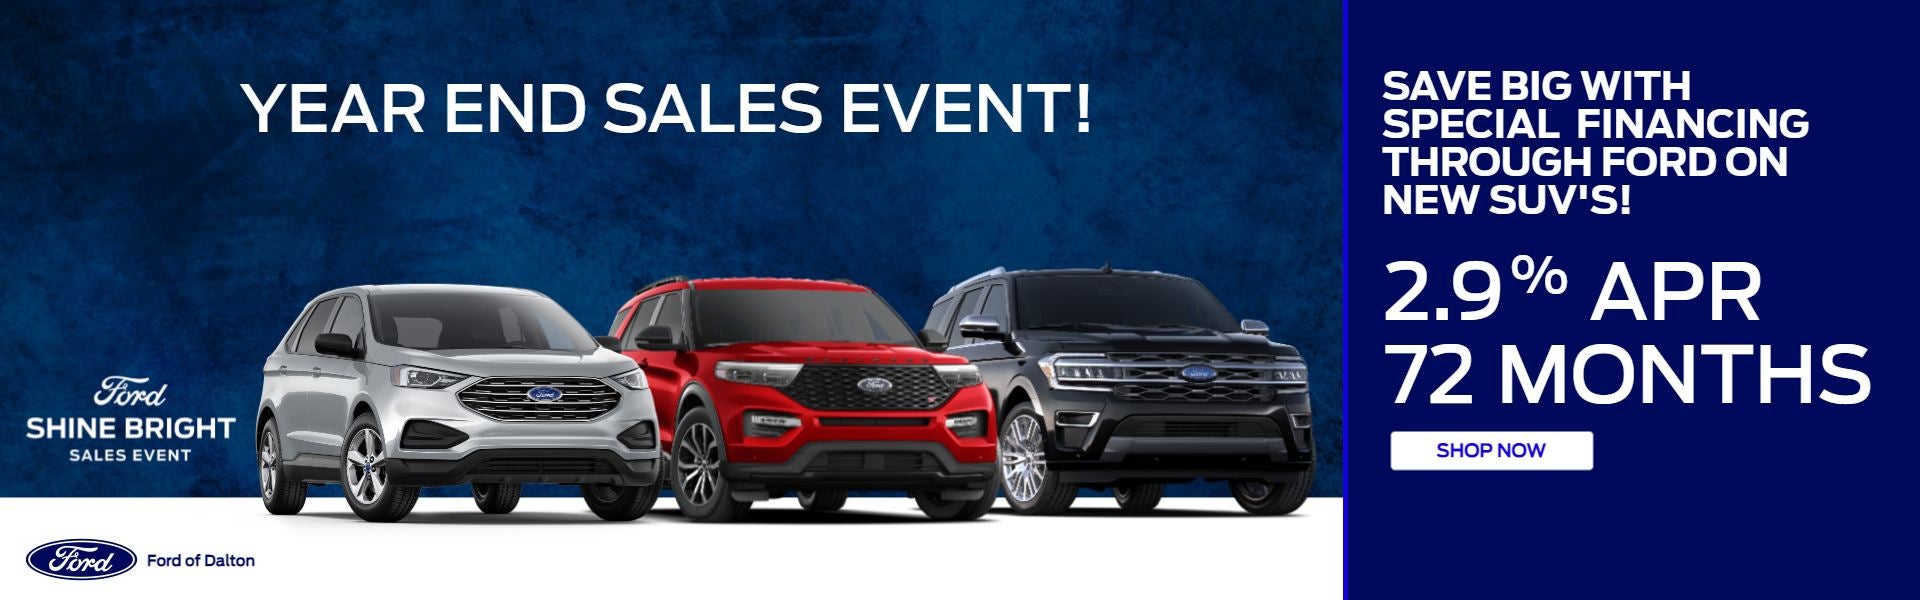 Ford Shine Bright Sales Event SUVs